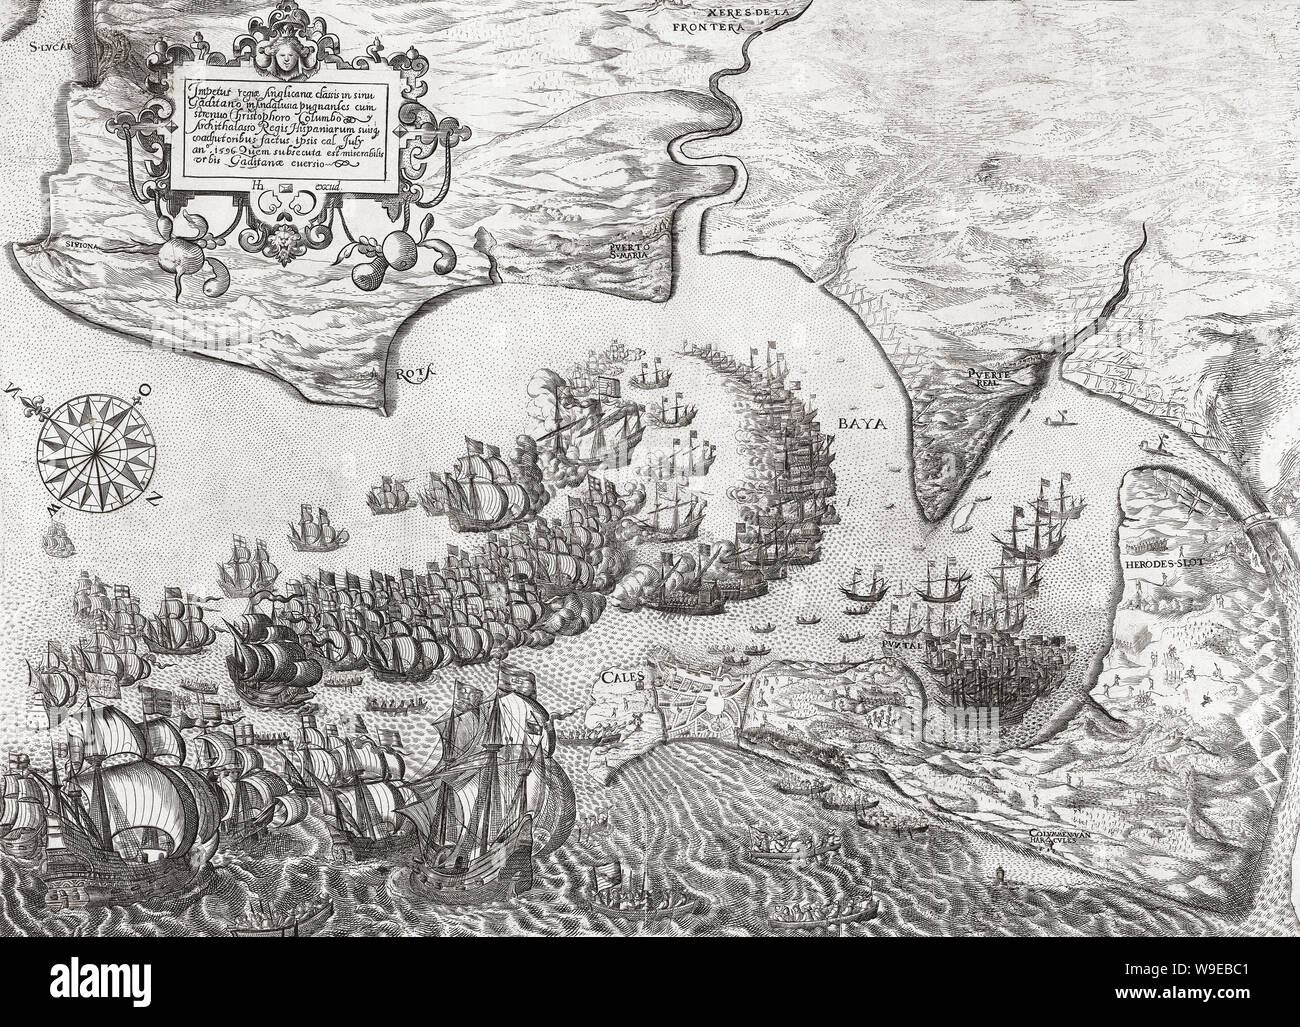 Défaite de la flotte espagnole et la chute de Cadix, le 1 juillet 1596 par une flotte anglo-néerlandaise au cours de la guerre anglo-espagnole. Banque D'Images